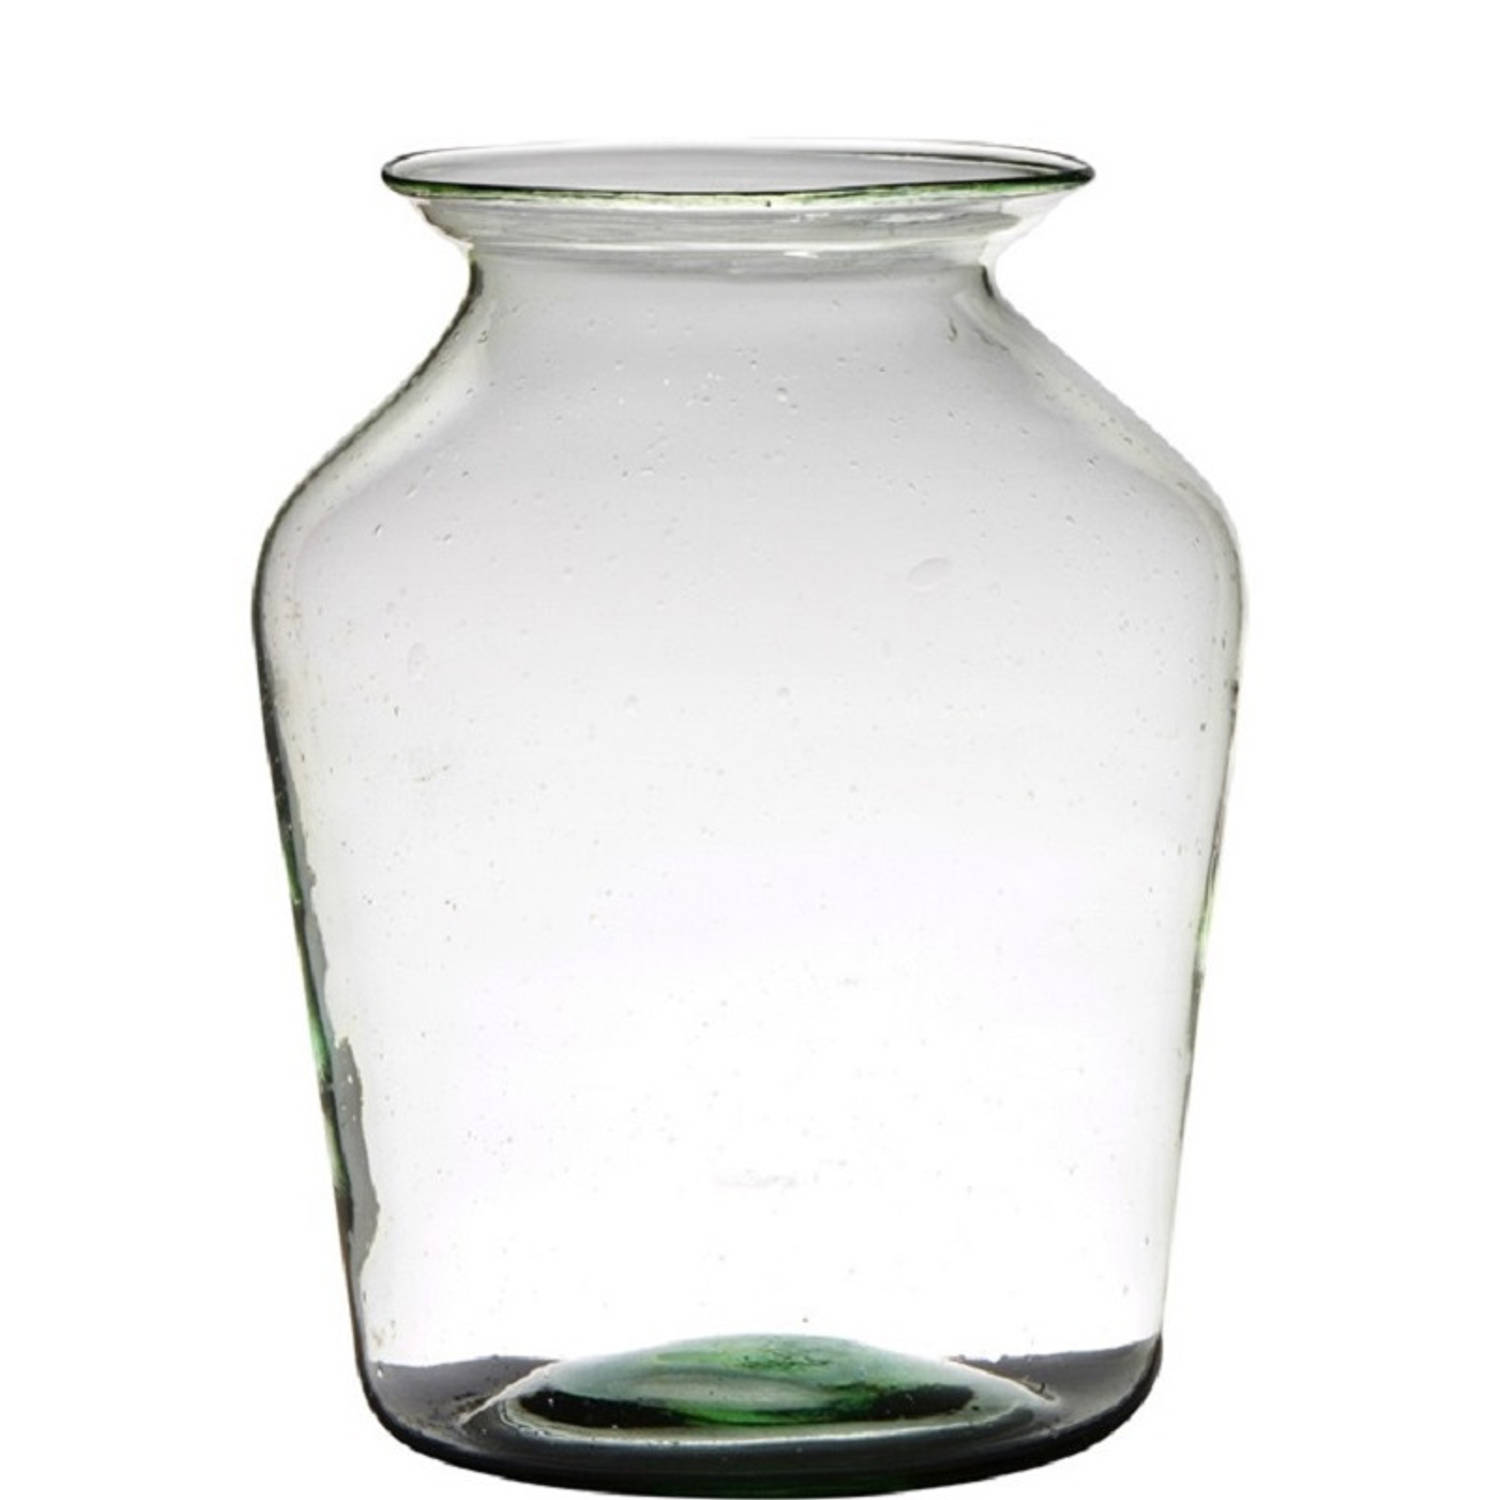 Transparante luxe grote stijlvolle vaas/vazen van gerecycled glas 36 x 24 cm - Bloemen/boeketten vaas voor binnen gebruik